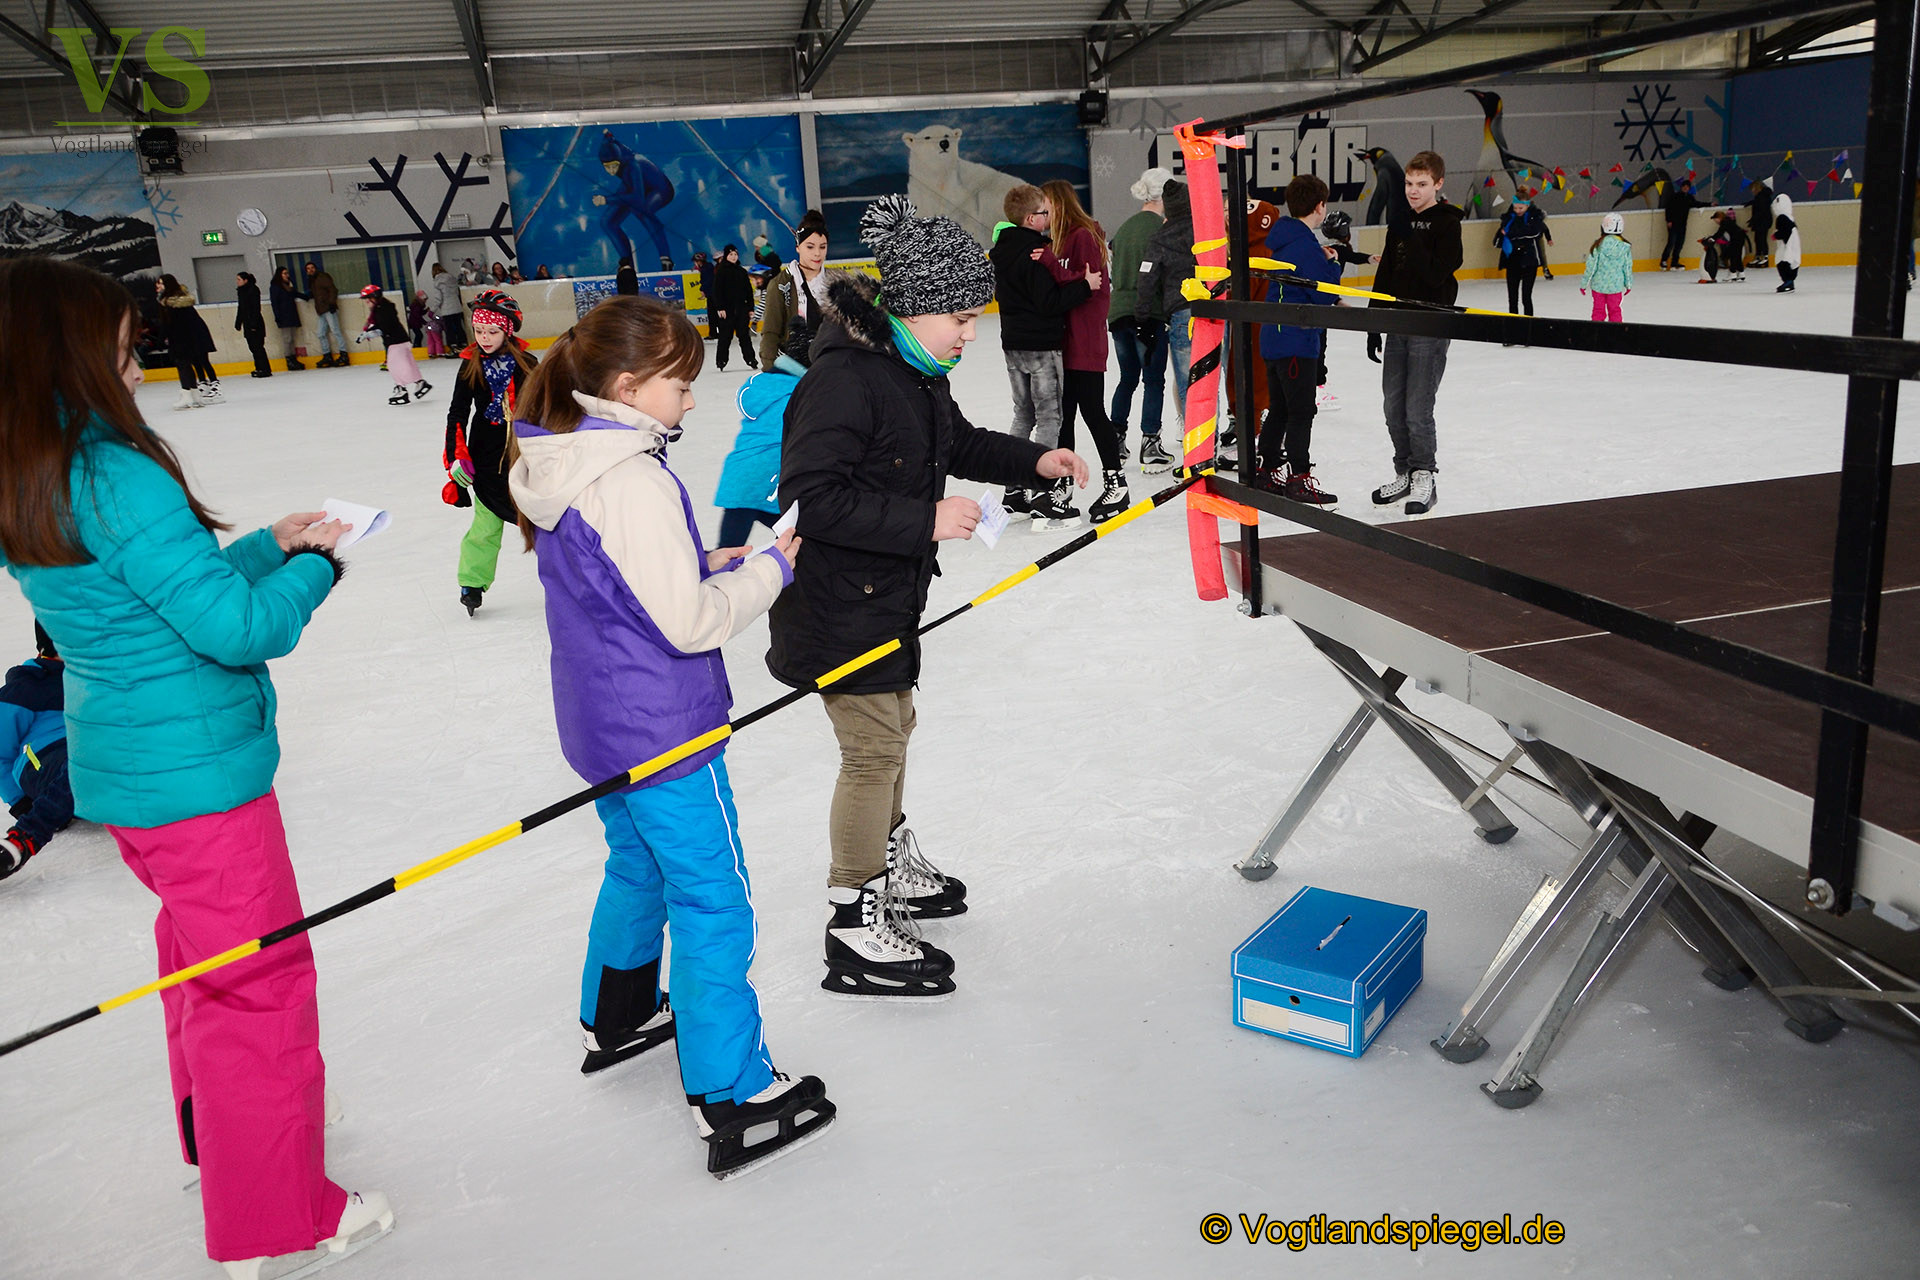 Am Freitagnachmittag wurde zum traditionellen Kindereisfasching auf die Eissportfläche der Stadt Greiz eingeladen